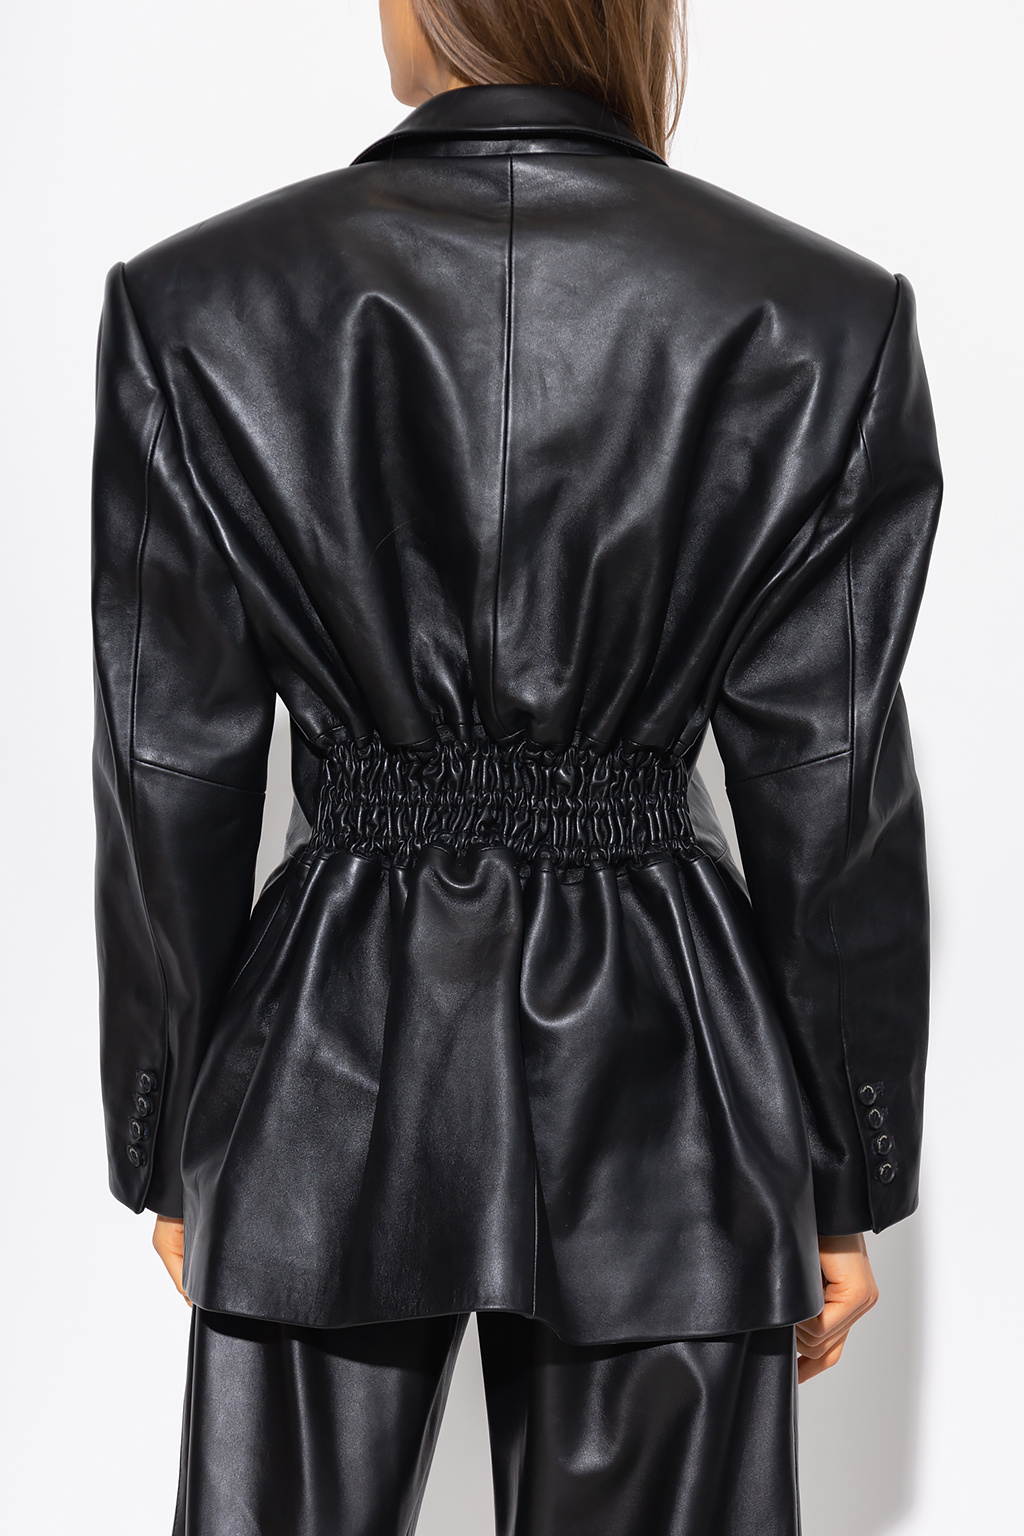 The Mannei ‘Jafr’ leather blazer